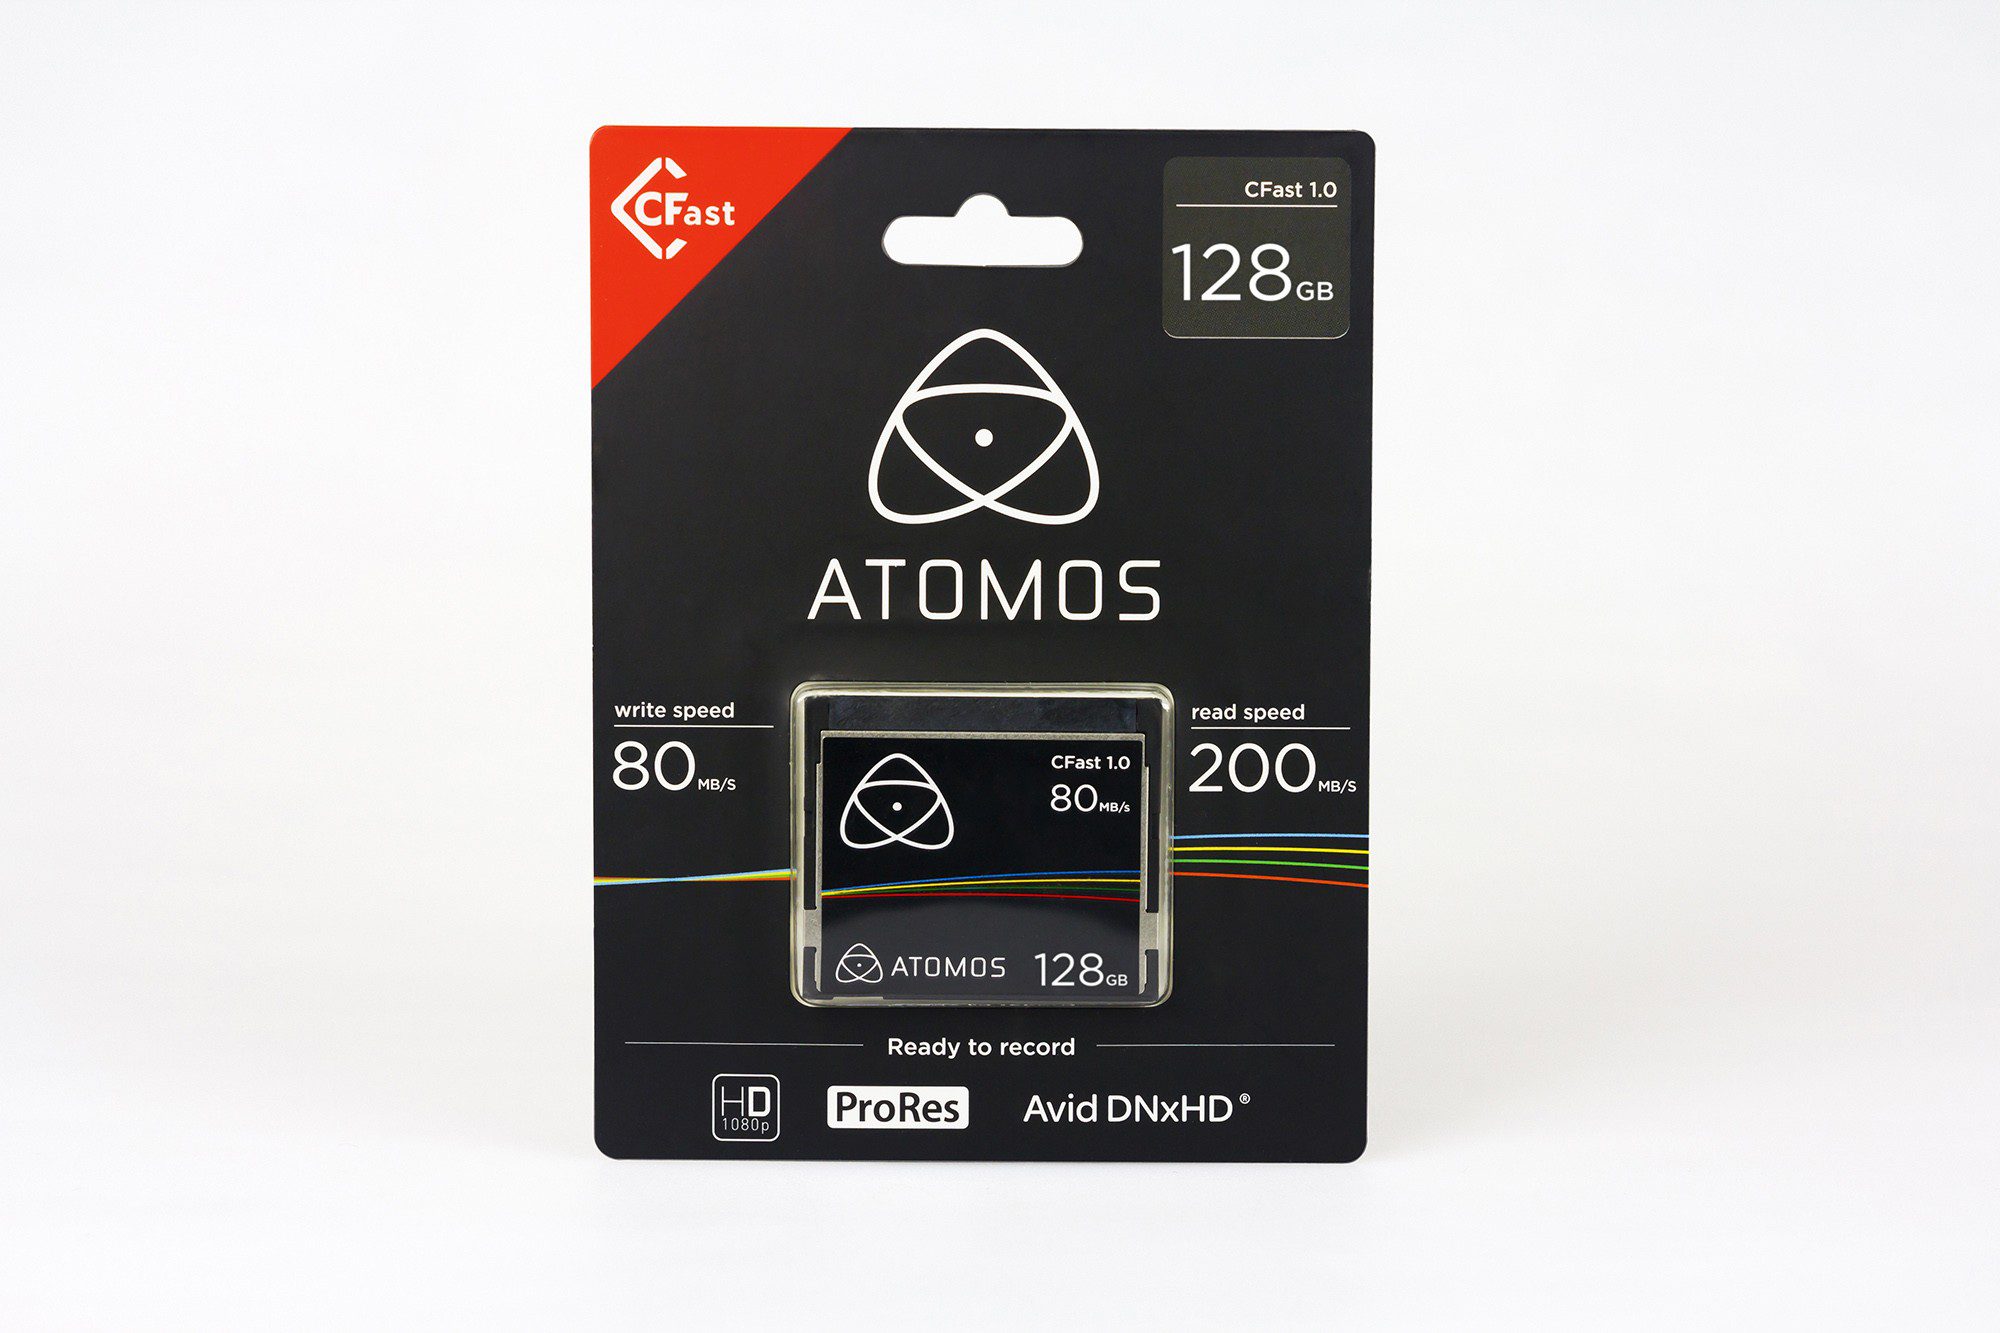 Atomos Cfast 1.0 - 128GB